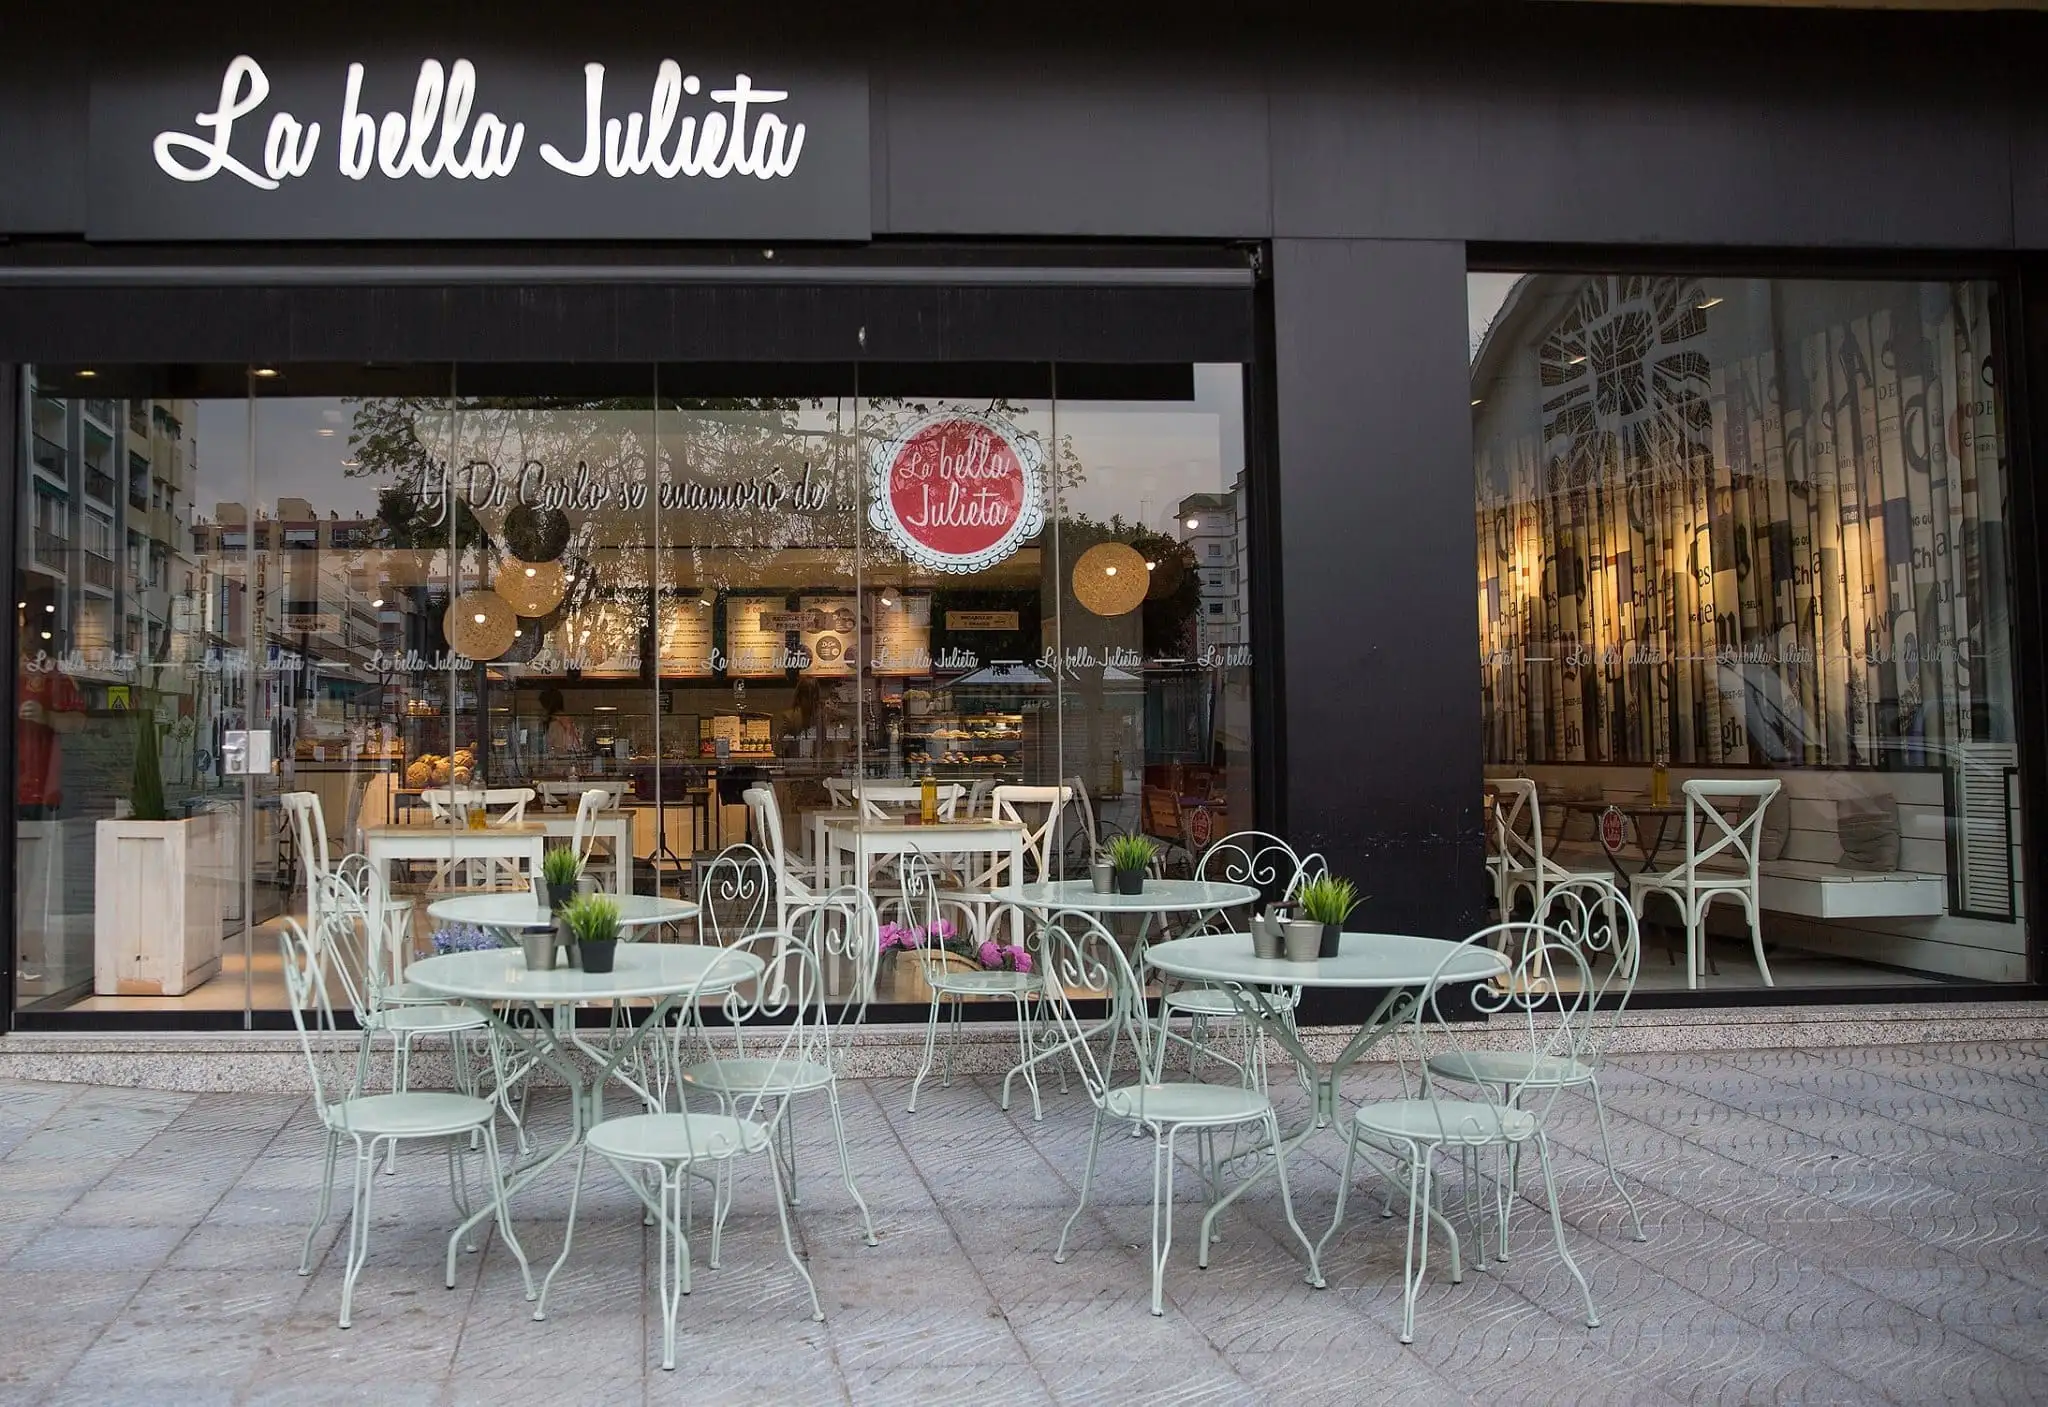 Breakfast at La Bella Julieta